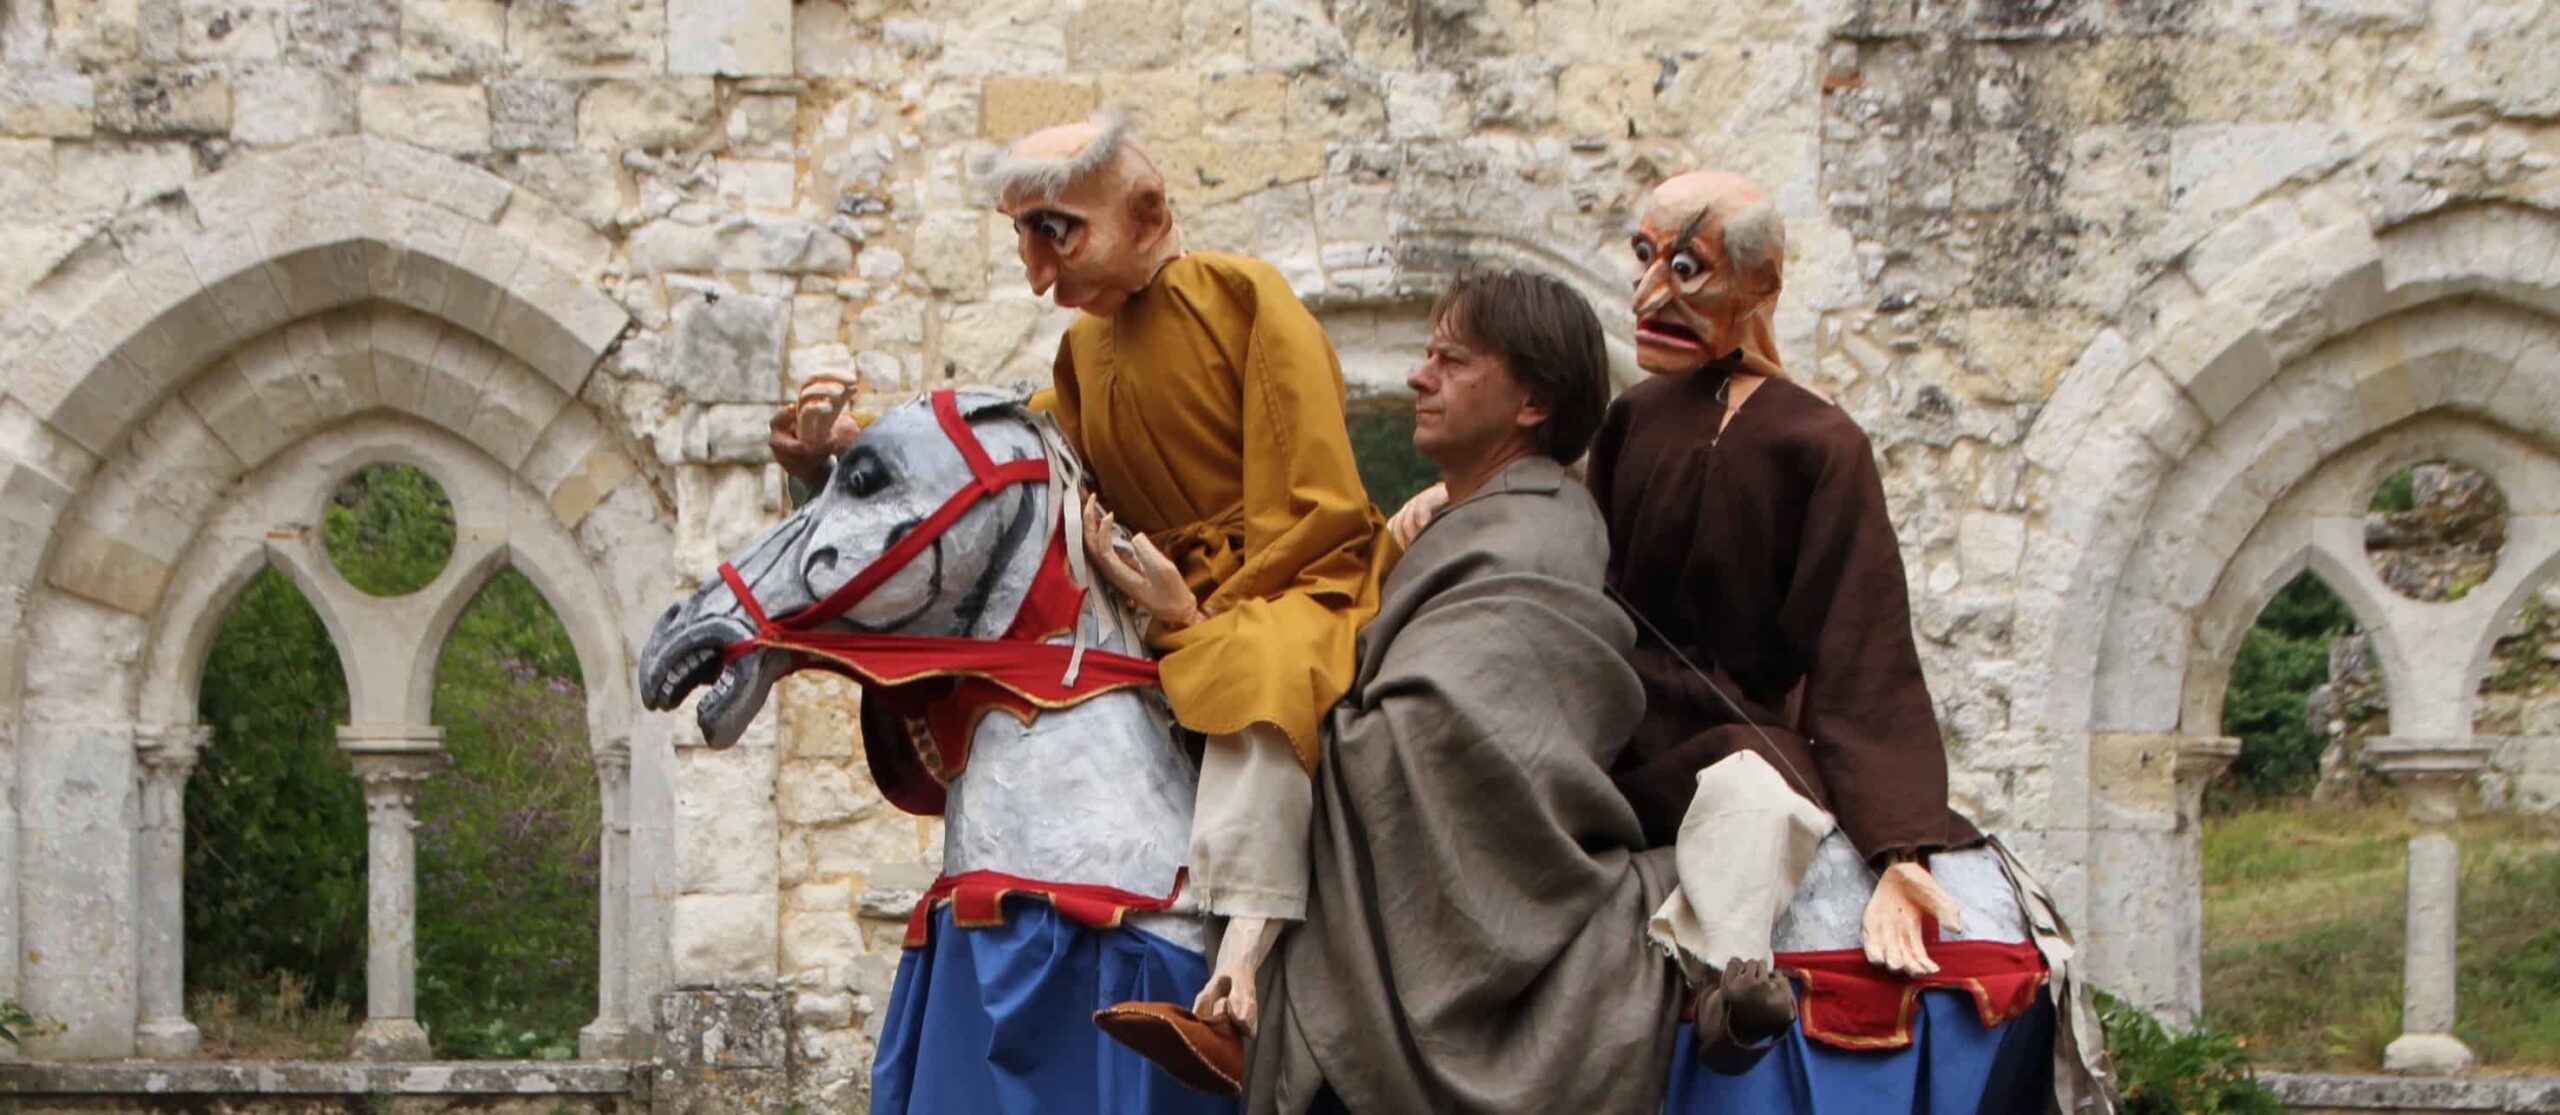 Deux individus portant des masques surdimensionnés et des vêtements médiévaux se produisant sur un faux cheval dans un contexte historique.